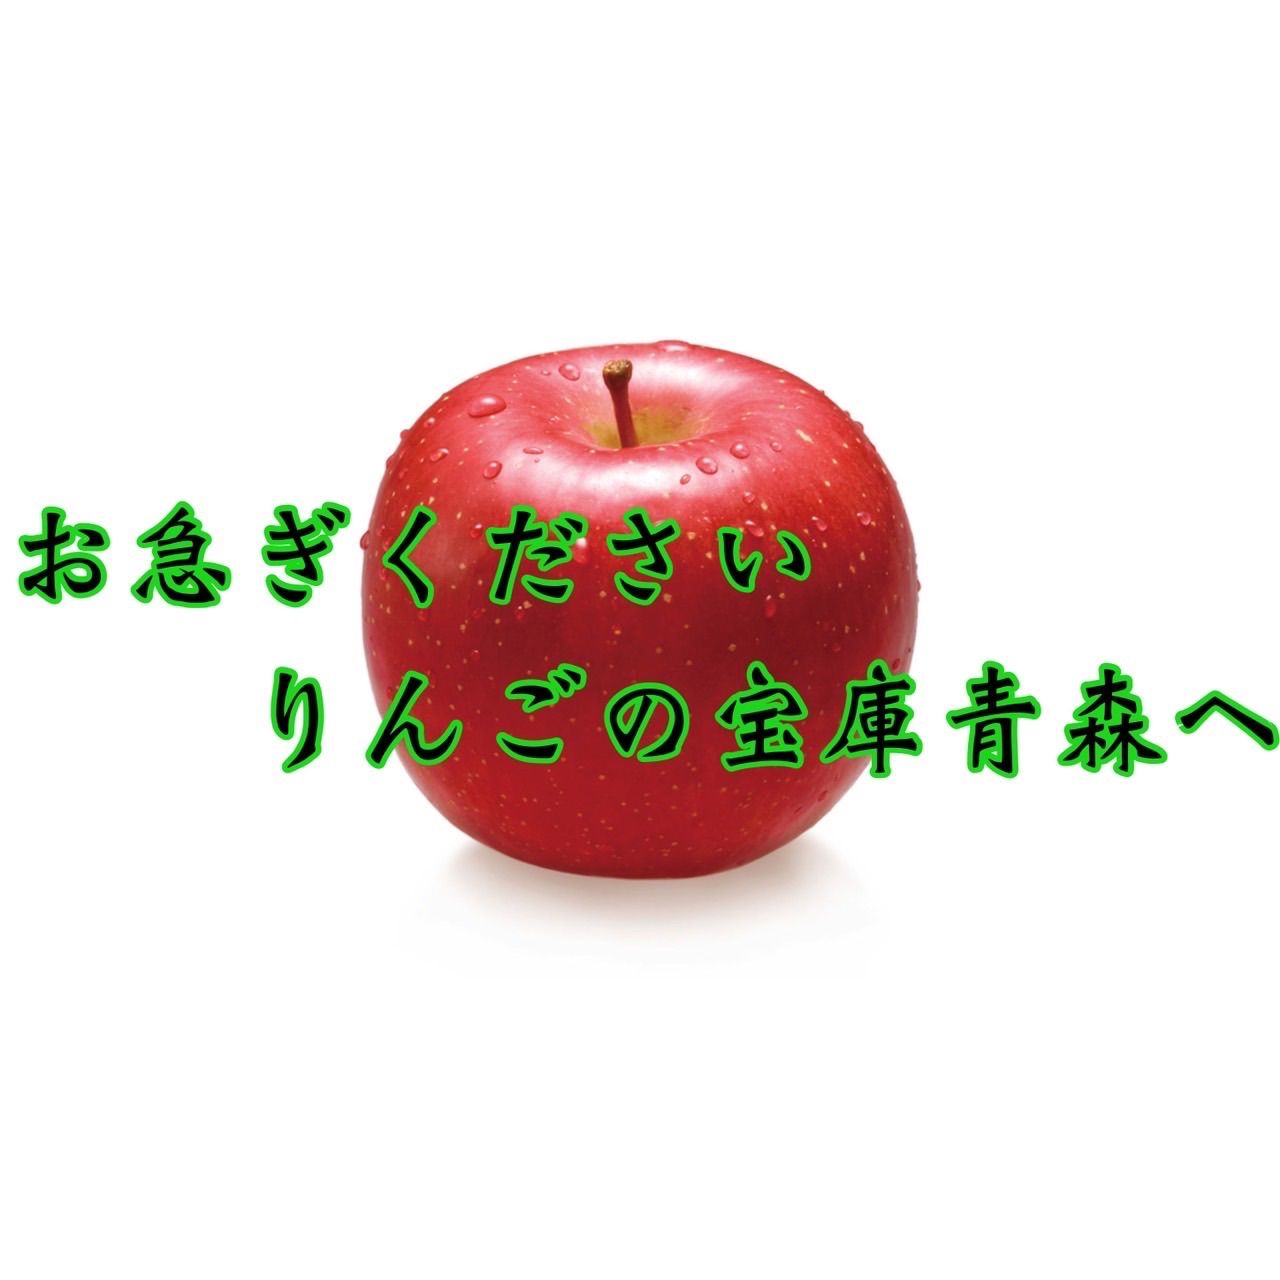 青森県産サンふじりんご訳あり2㎏6玉入り-7